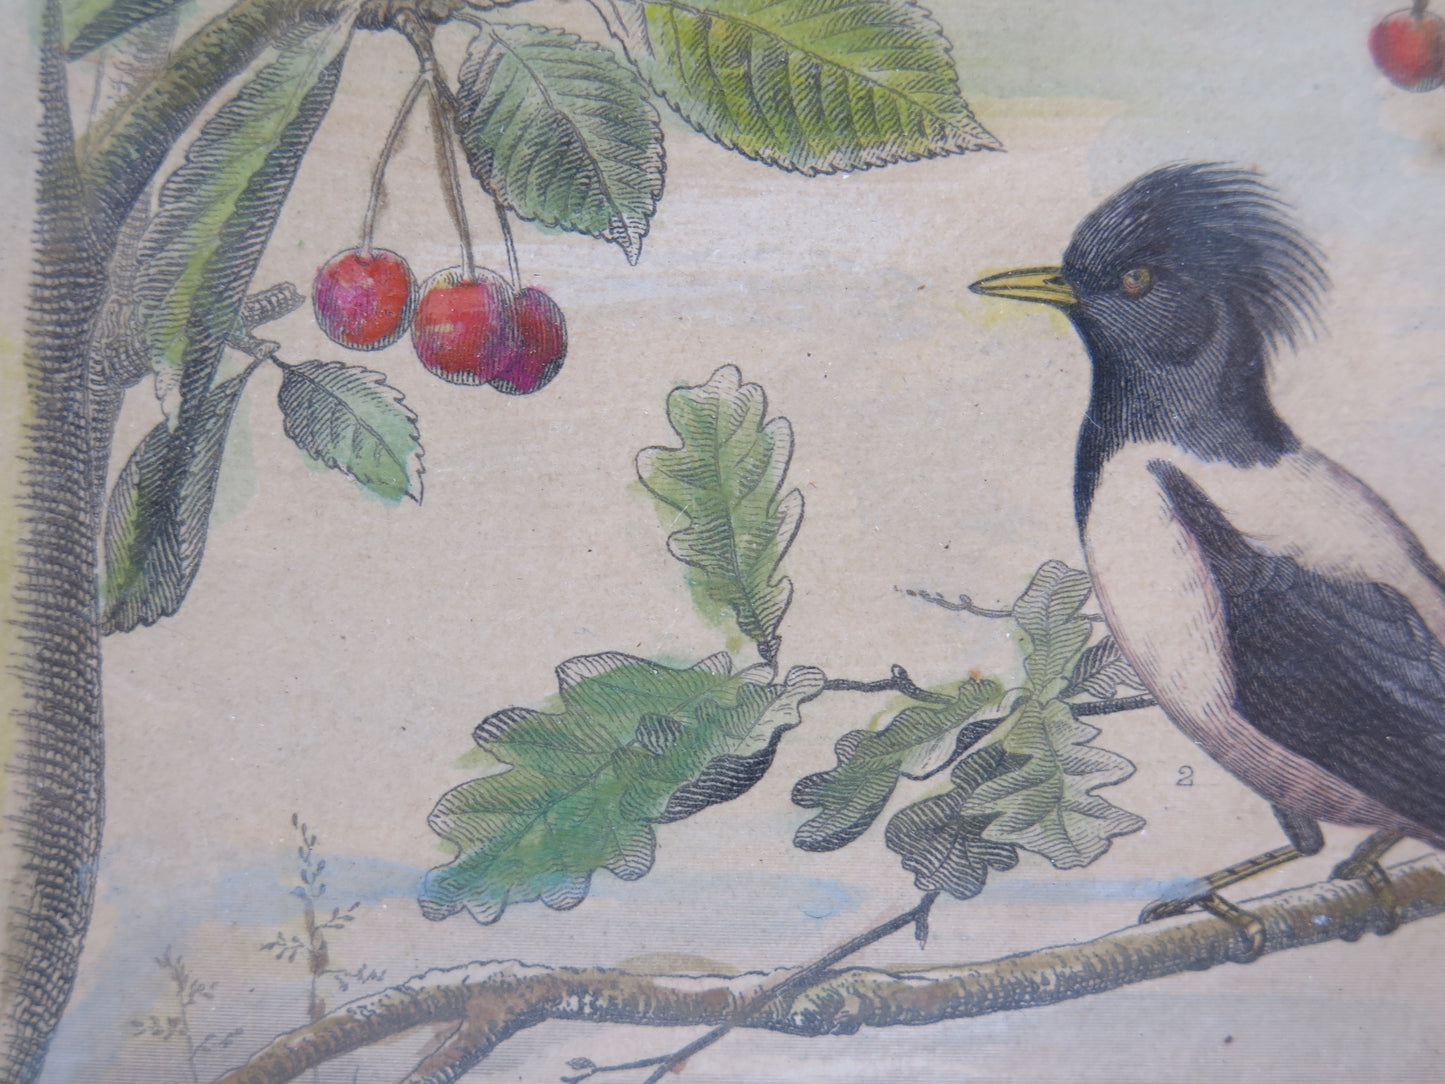 Stampa antica tema naturalistico uccelli animali merlo ciliegie incisione bt4